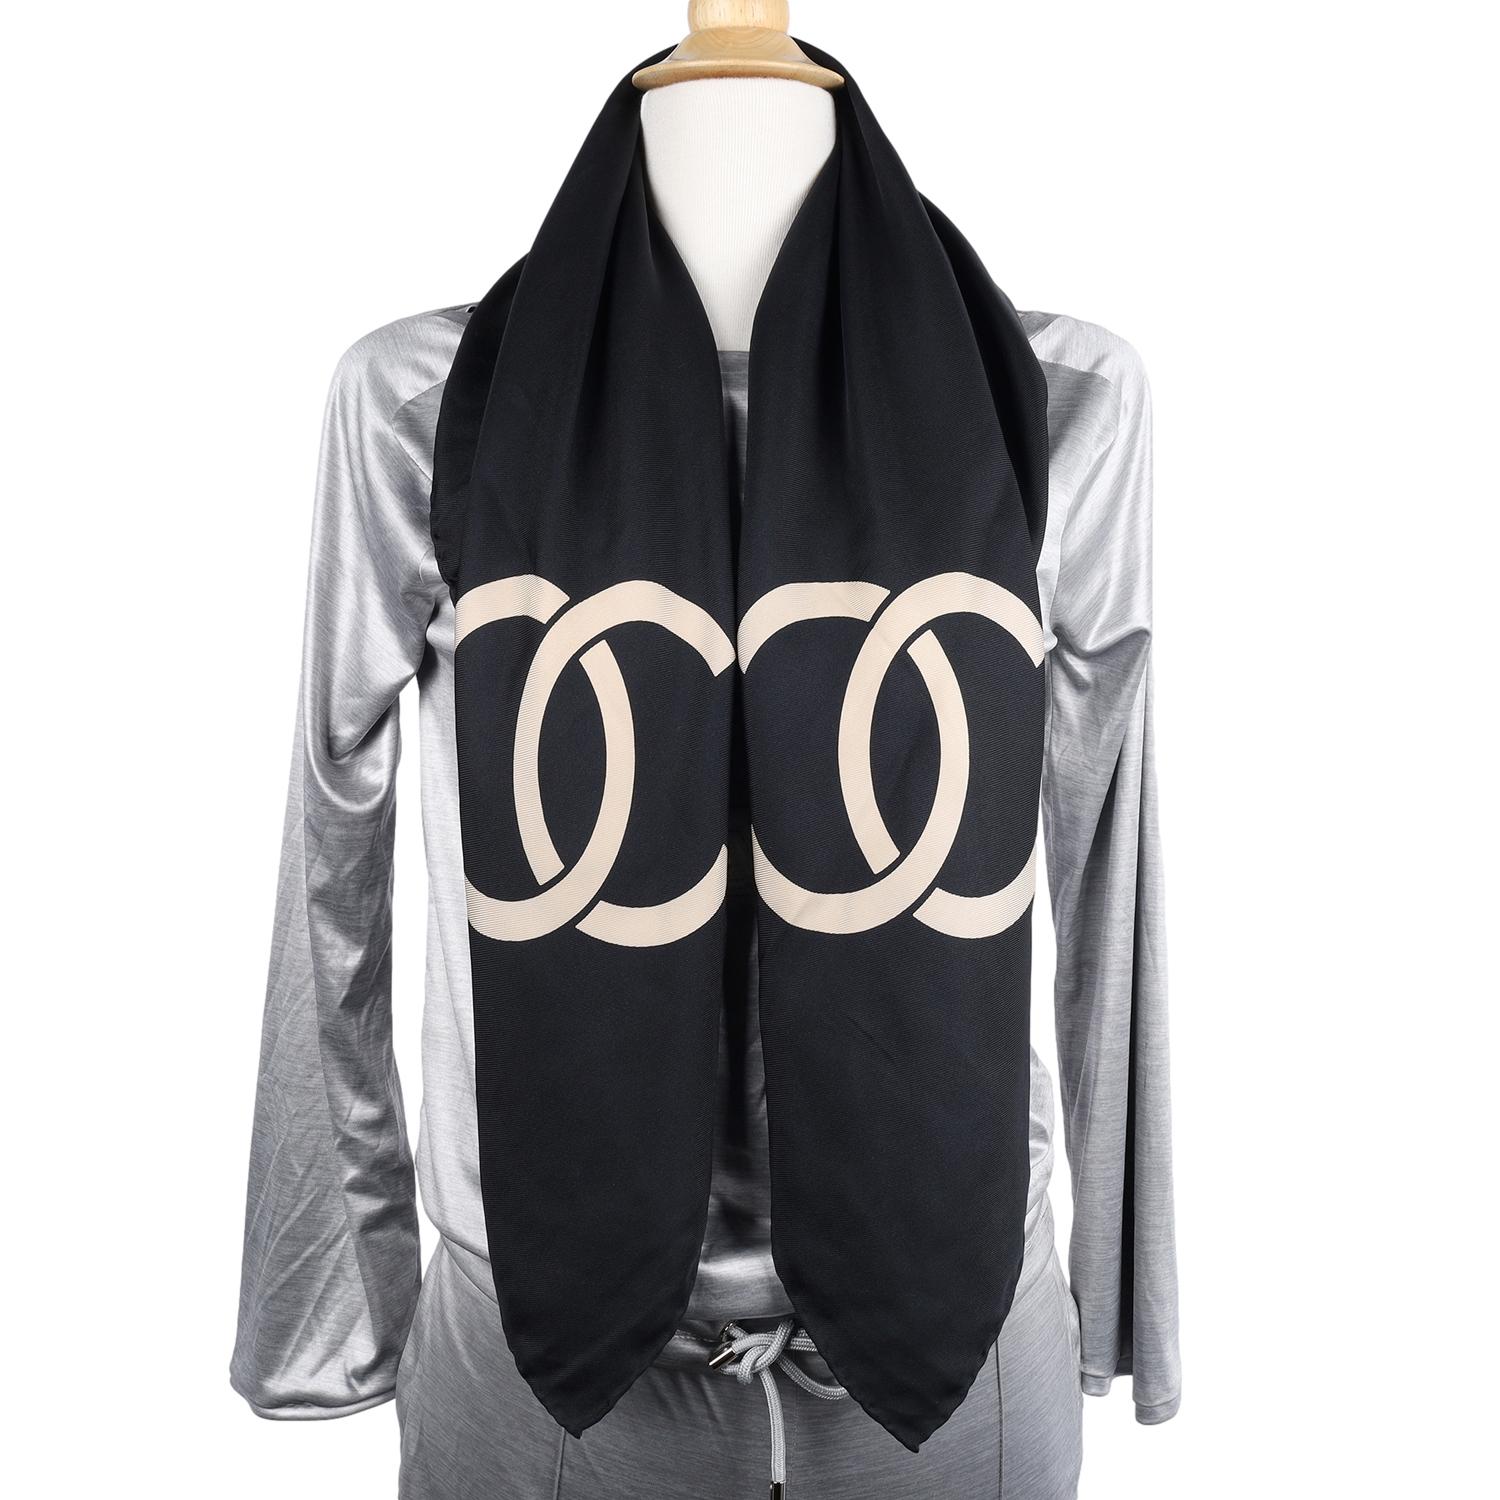 Authentique écharpe en soie Chanel CC Logo en beige et noir. Rare, indispensable. Très belle ! 
Cette écharpe en soie, d'une élégance sans effort, vous enveloppe littéralement d'une couverture de douceur délicate. Le motif emblématique a été